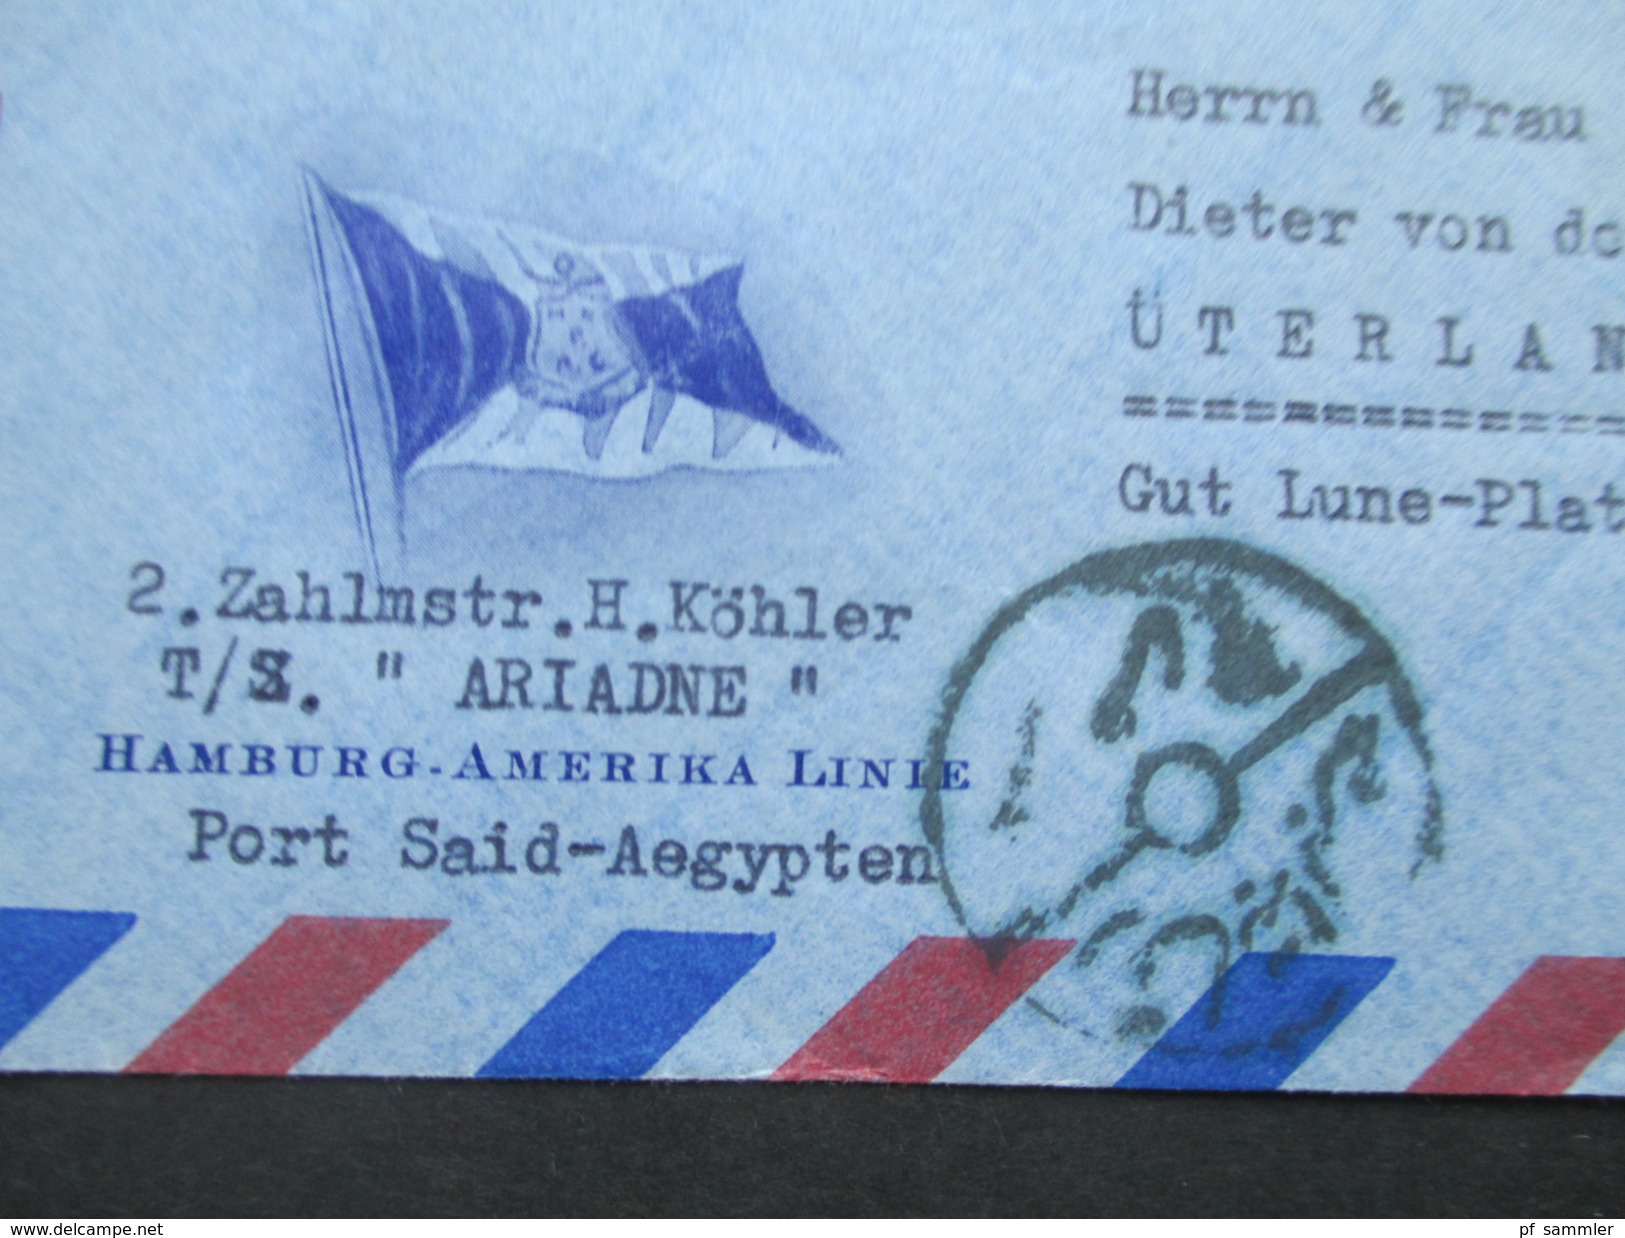 Ägypten 1950er Jahre Luftpostbrief / Schiffspost Hamburg - Amerika Linie. TS Ariadne. Nach Üterlande.Interessanter Beleg - Storia Postale